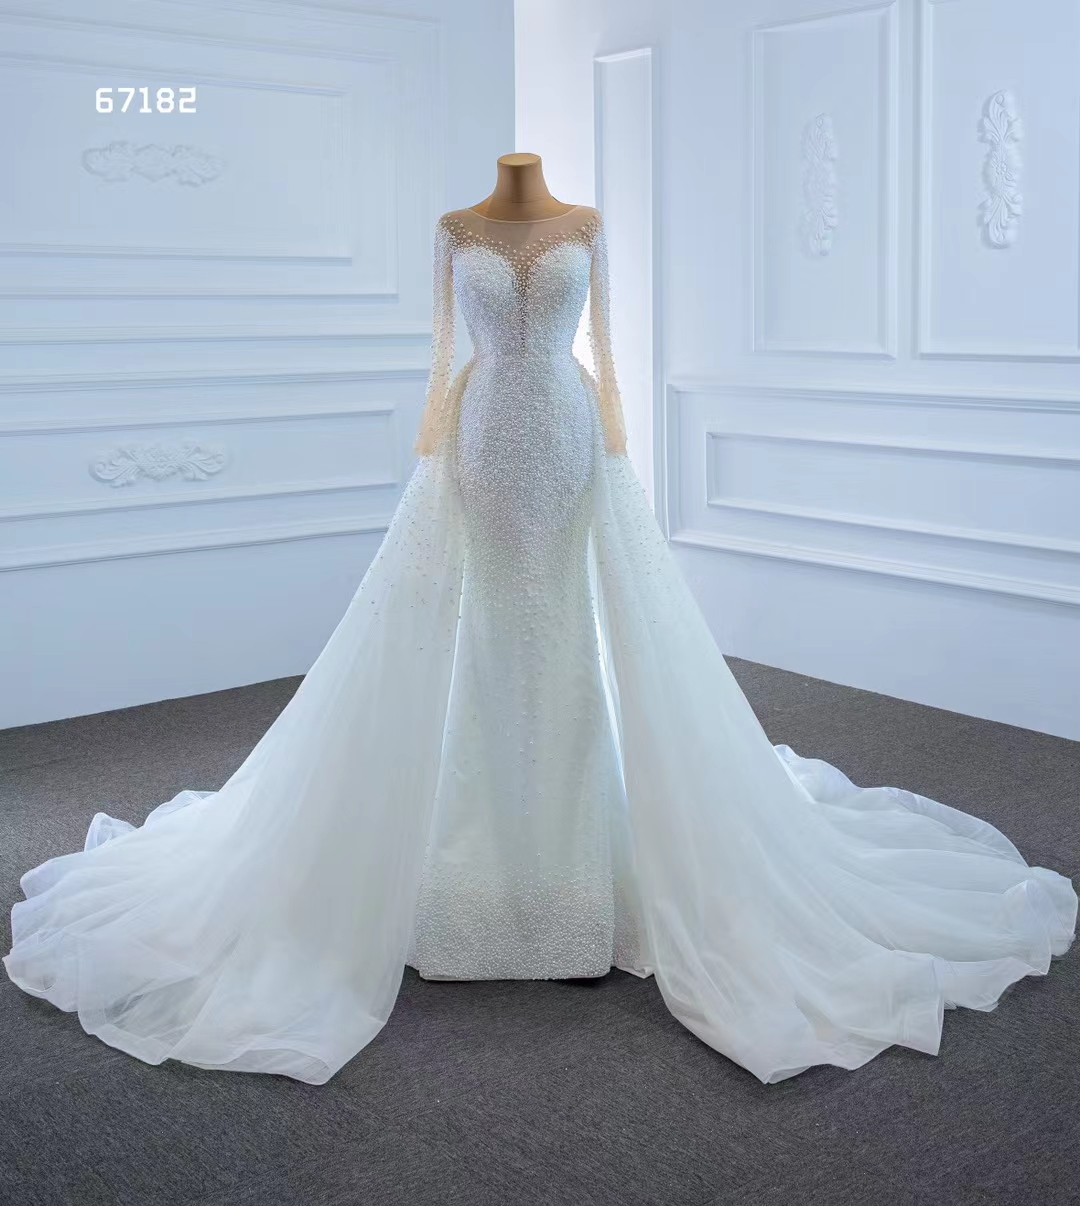 Sjöjungfrun bröllopsklänning prinsessa långärmad kristall spetsklänning mantel elegant älskling SM67182